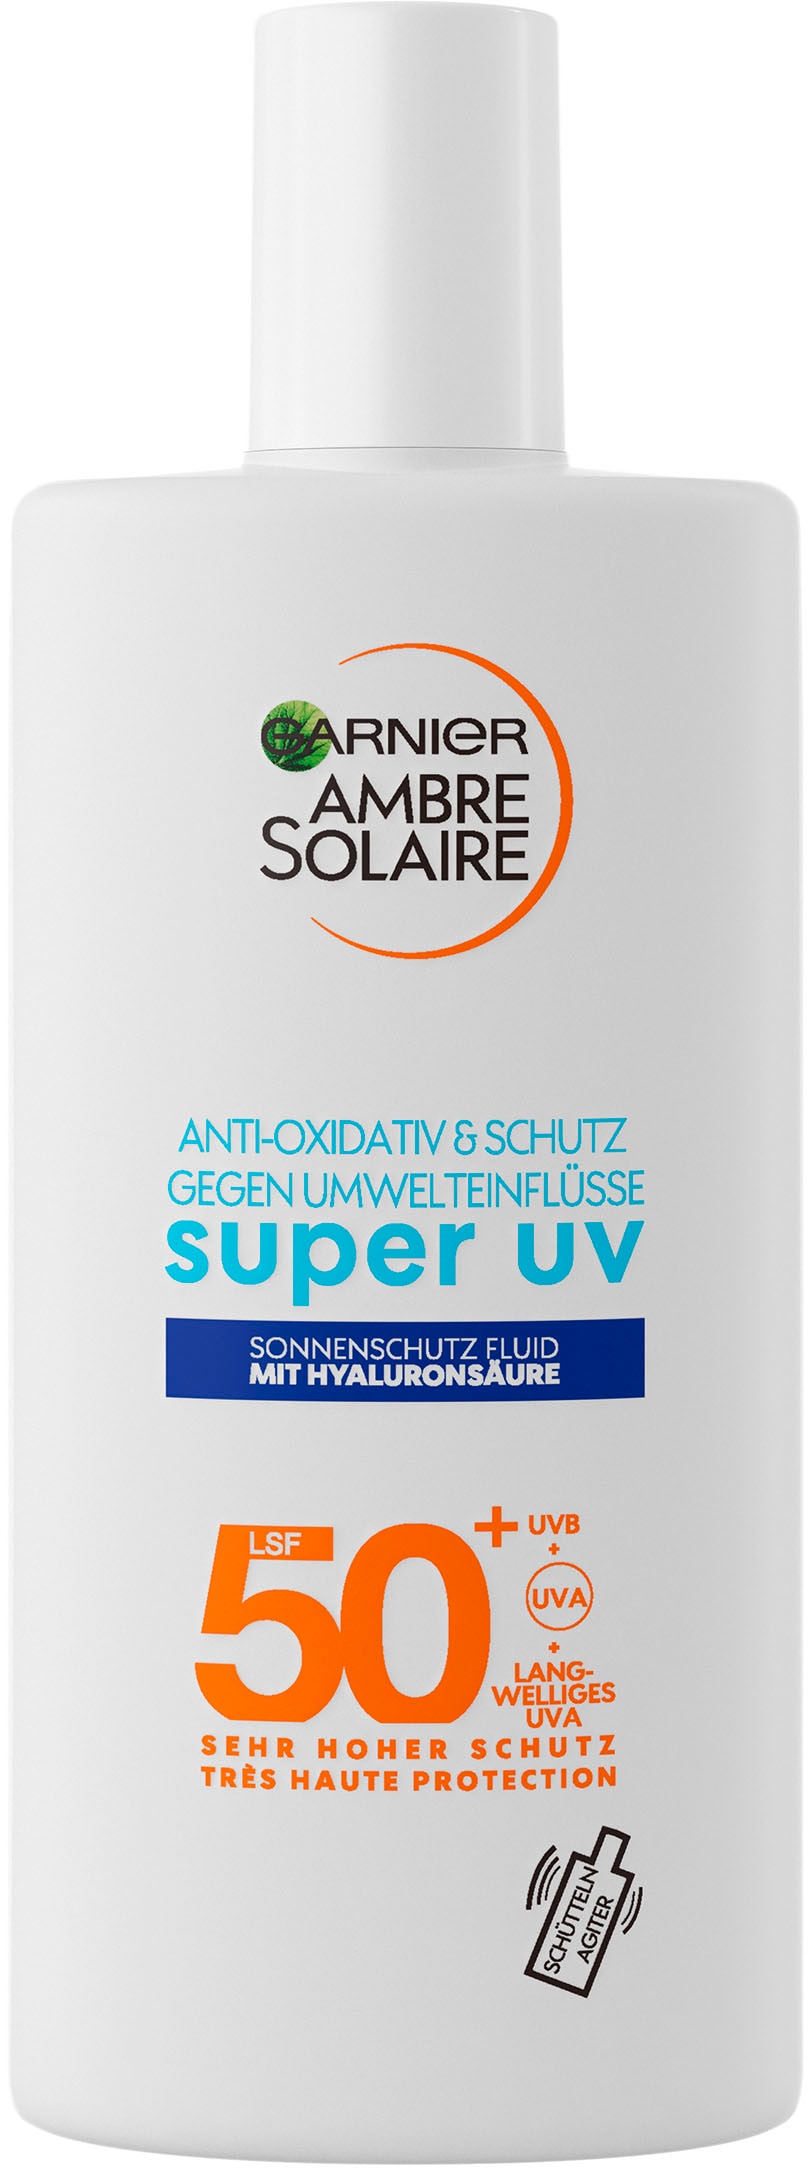 GARNIER 50 Solaire Sensitive LSF expert+«, mit Hyaluronsäure »Ambre bei Sonnenschutzfluid